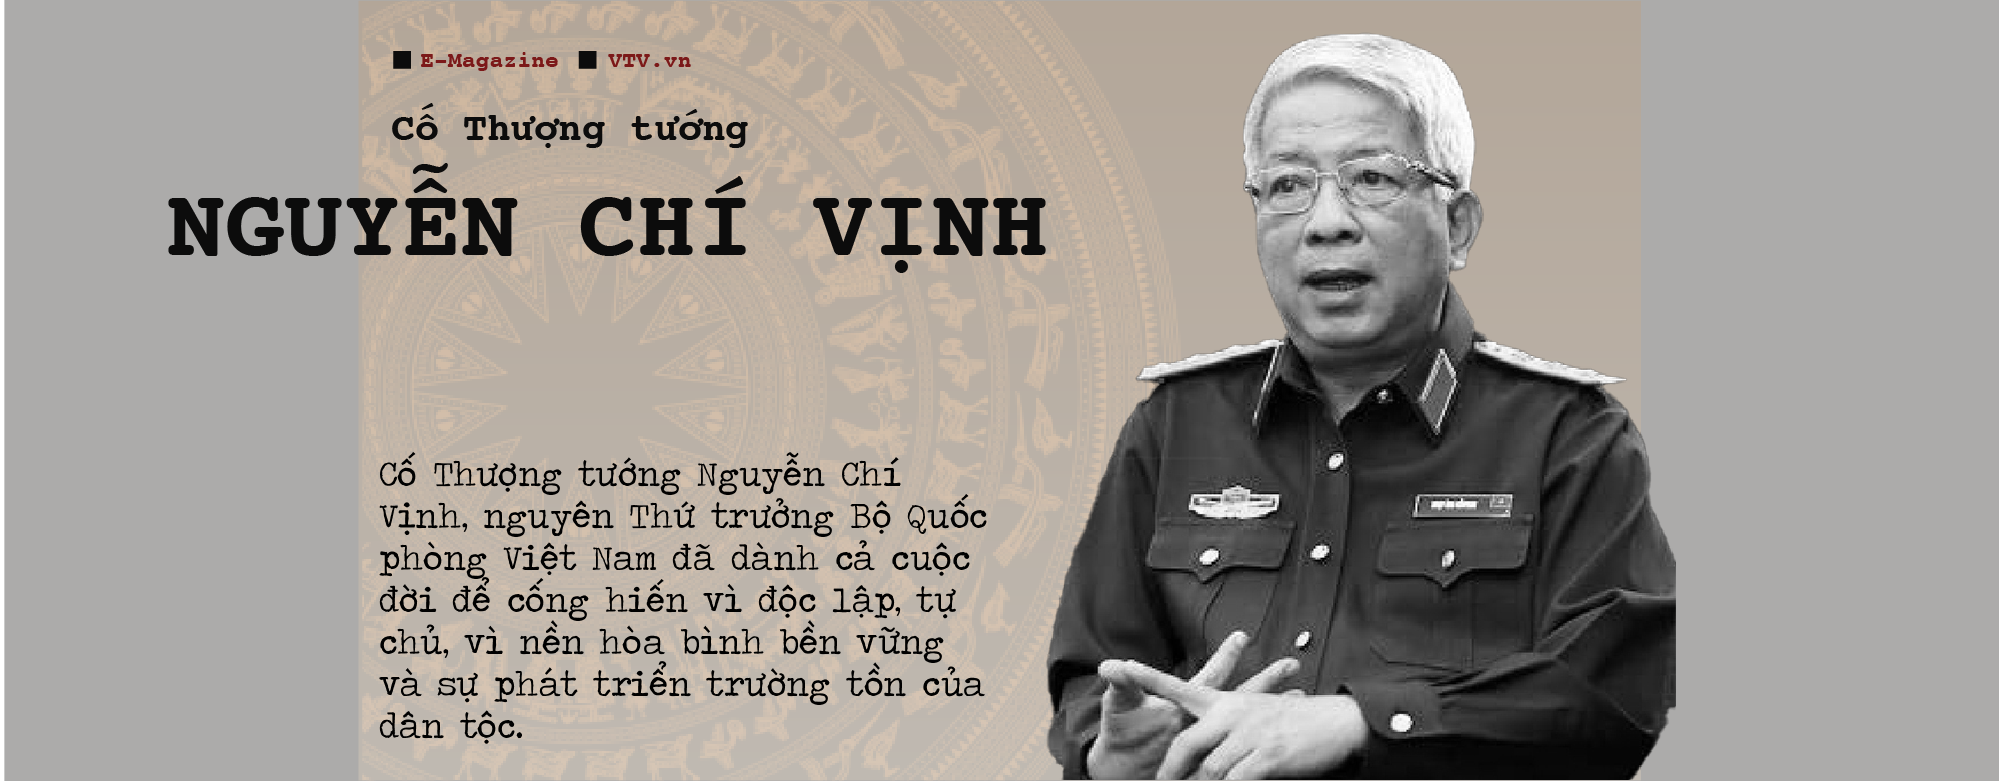 Thượng tướng Nguyễn Chí Vịnh: Từ cậu bé binh bét của cha đến nhà ngoại giao Quốc phòng - Ảnh 3.